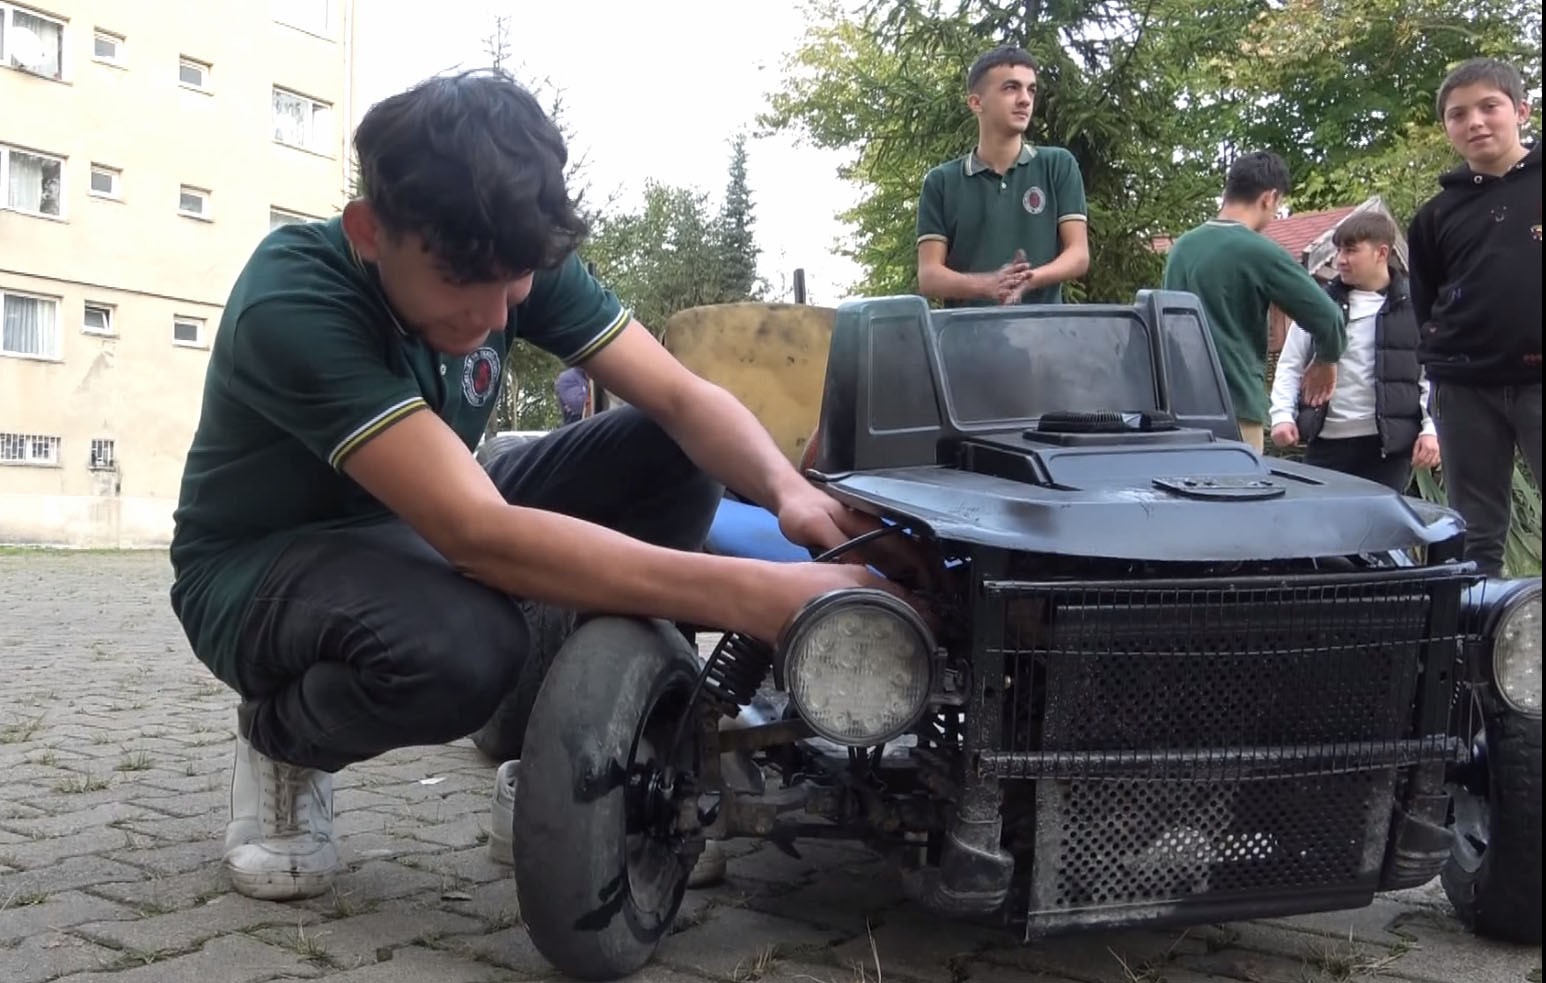 Giresun'da lise öğrencisi hurda parçalardan araba yaptı